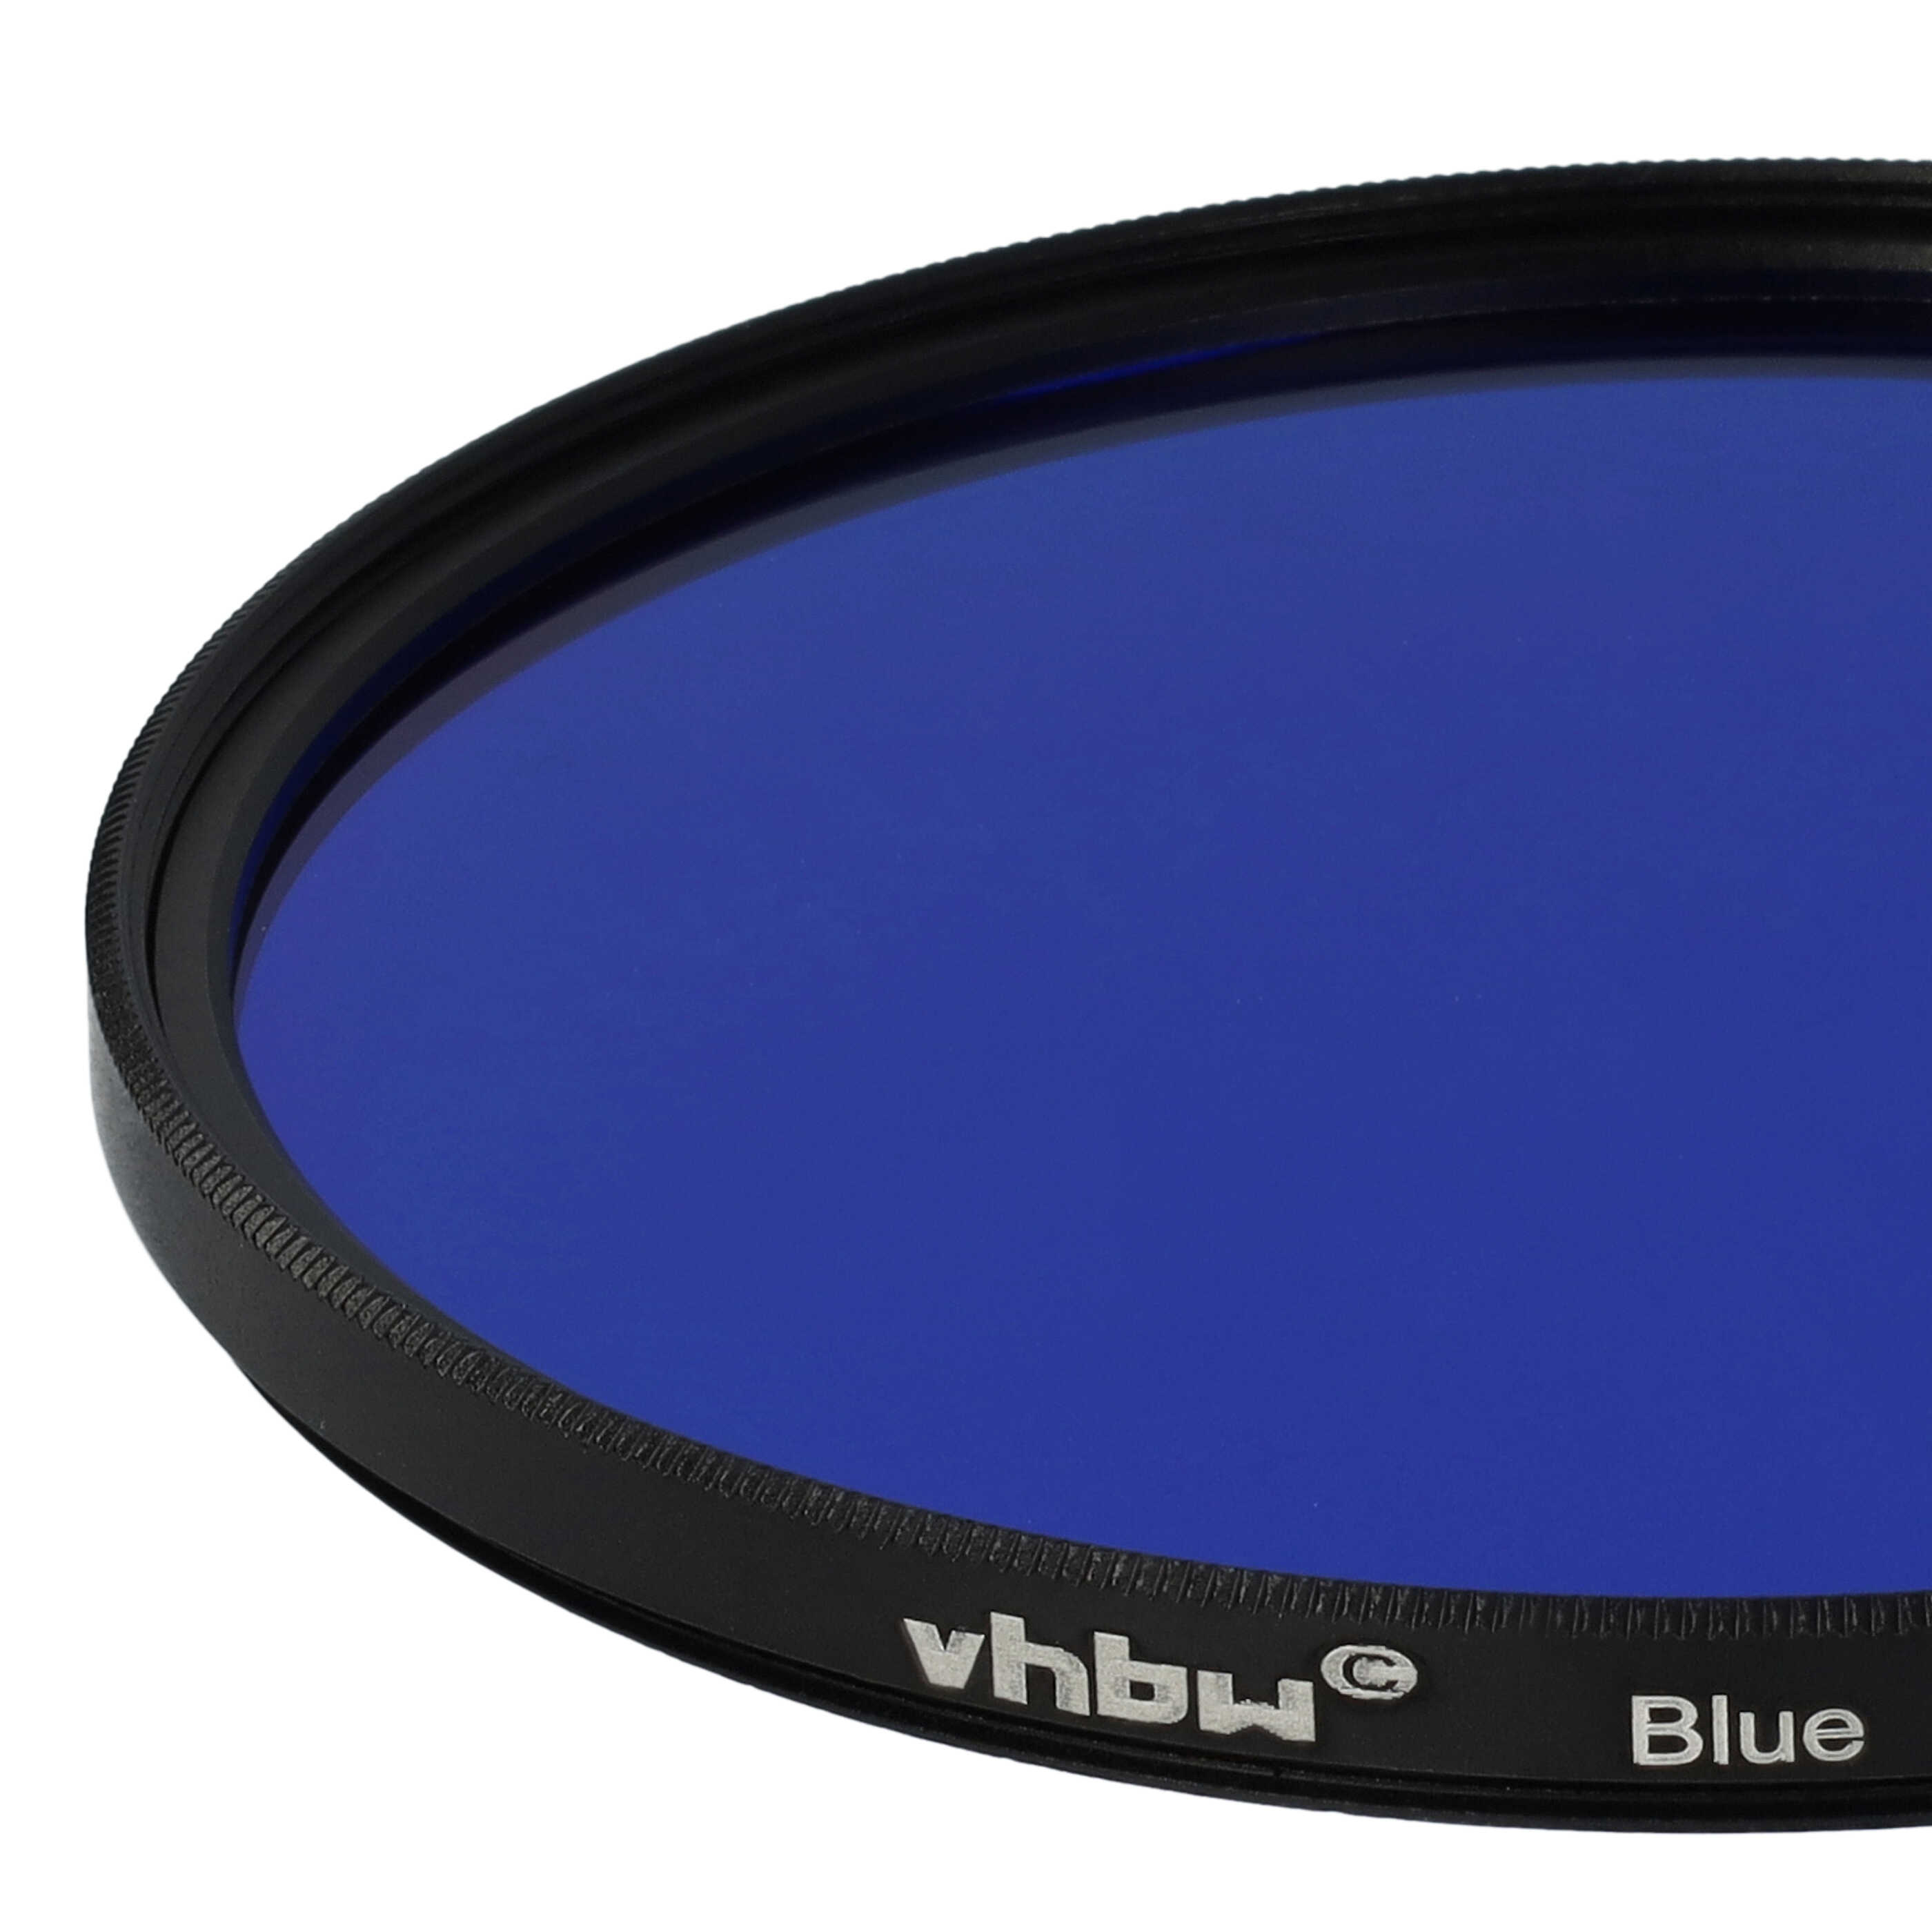 Farbfilter blau passend für Kamera Objektive mit 77 mm Filtergewinde - Blaufilter